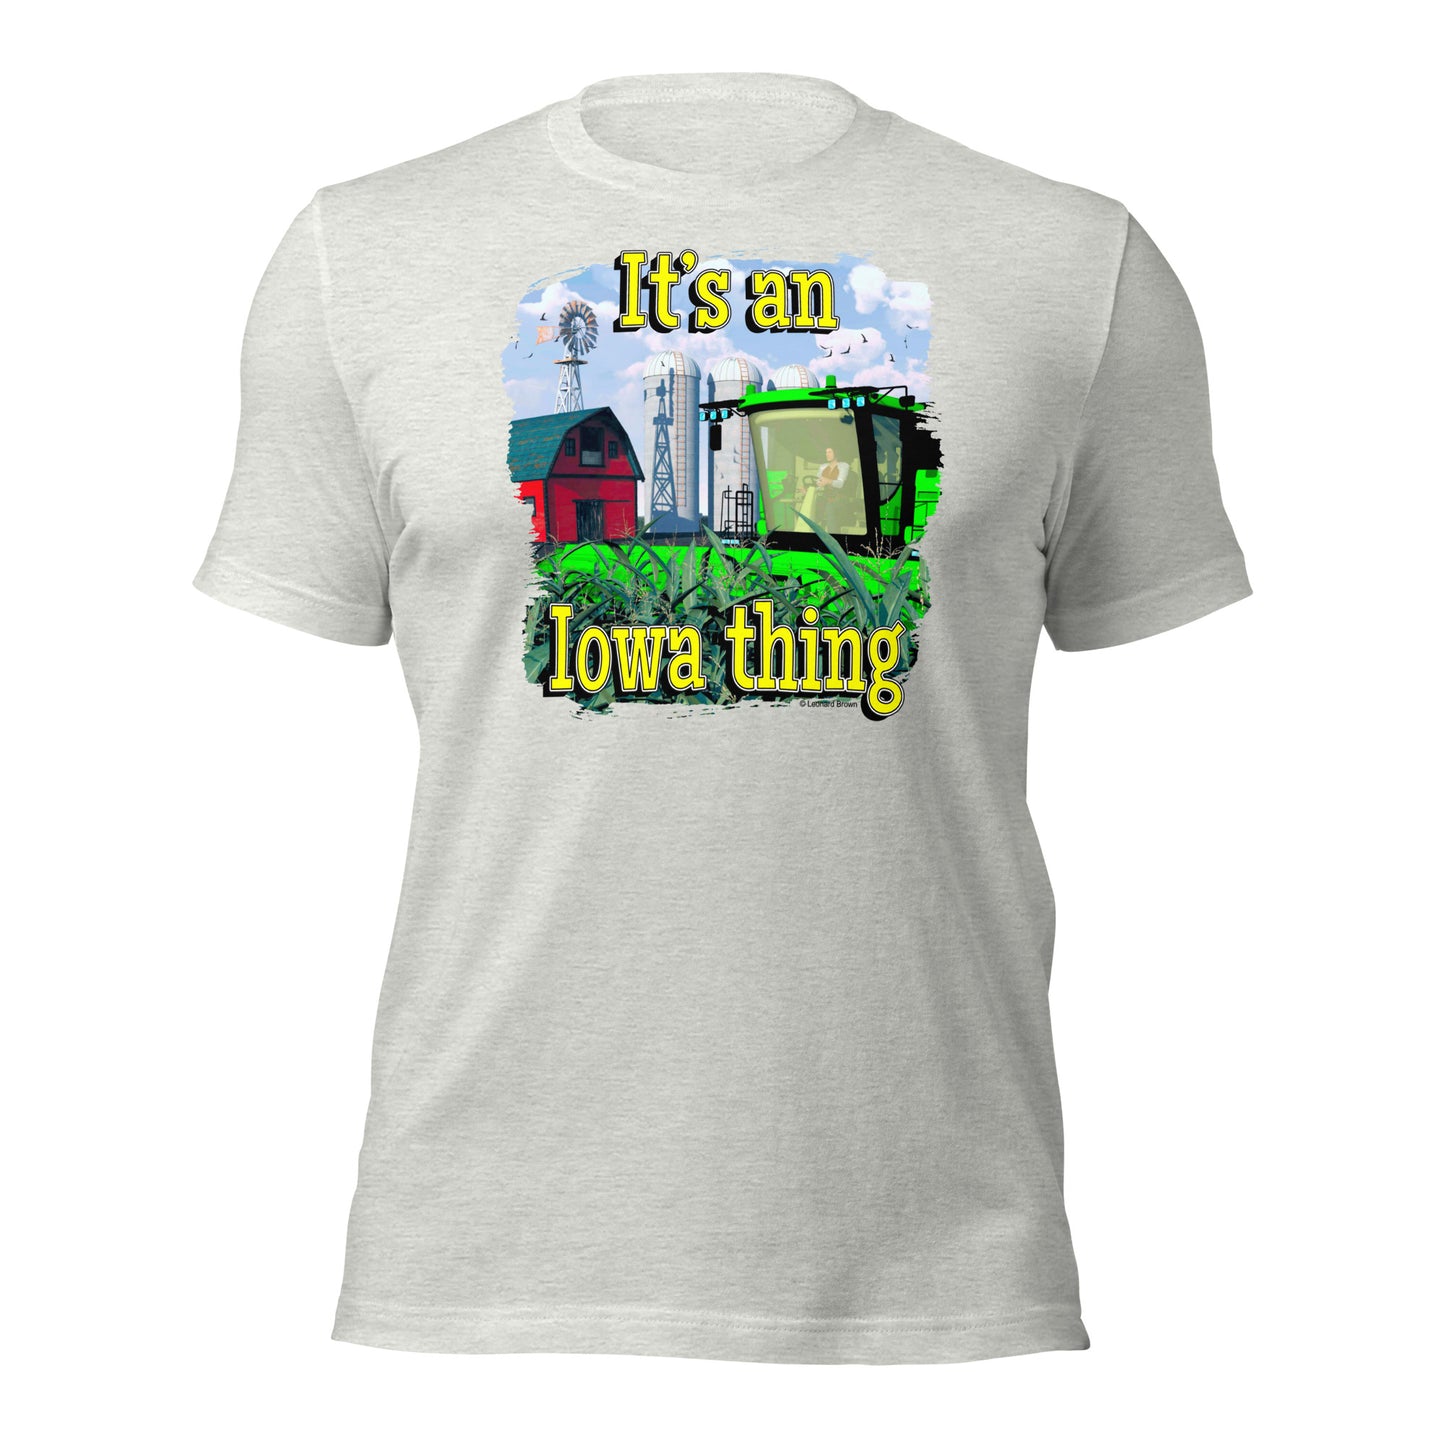 It’s an Iowa Thing t-shirt